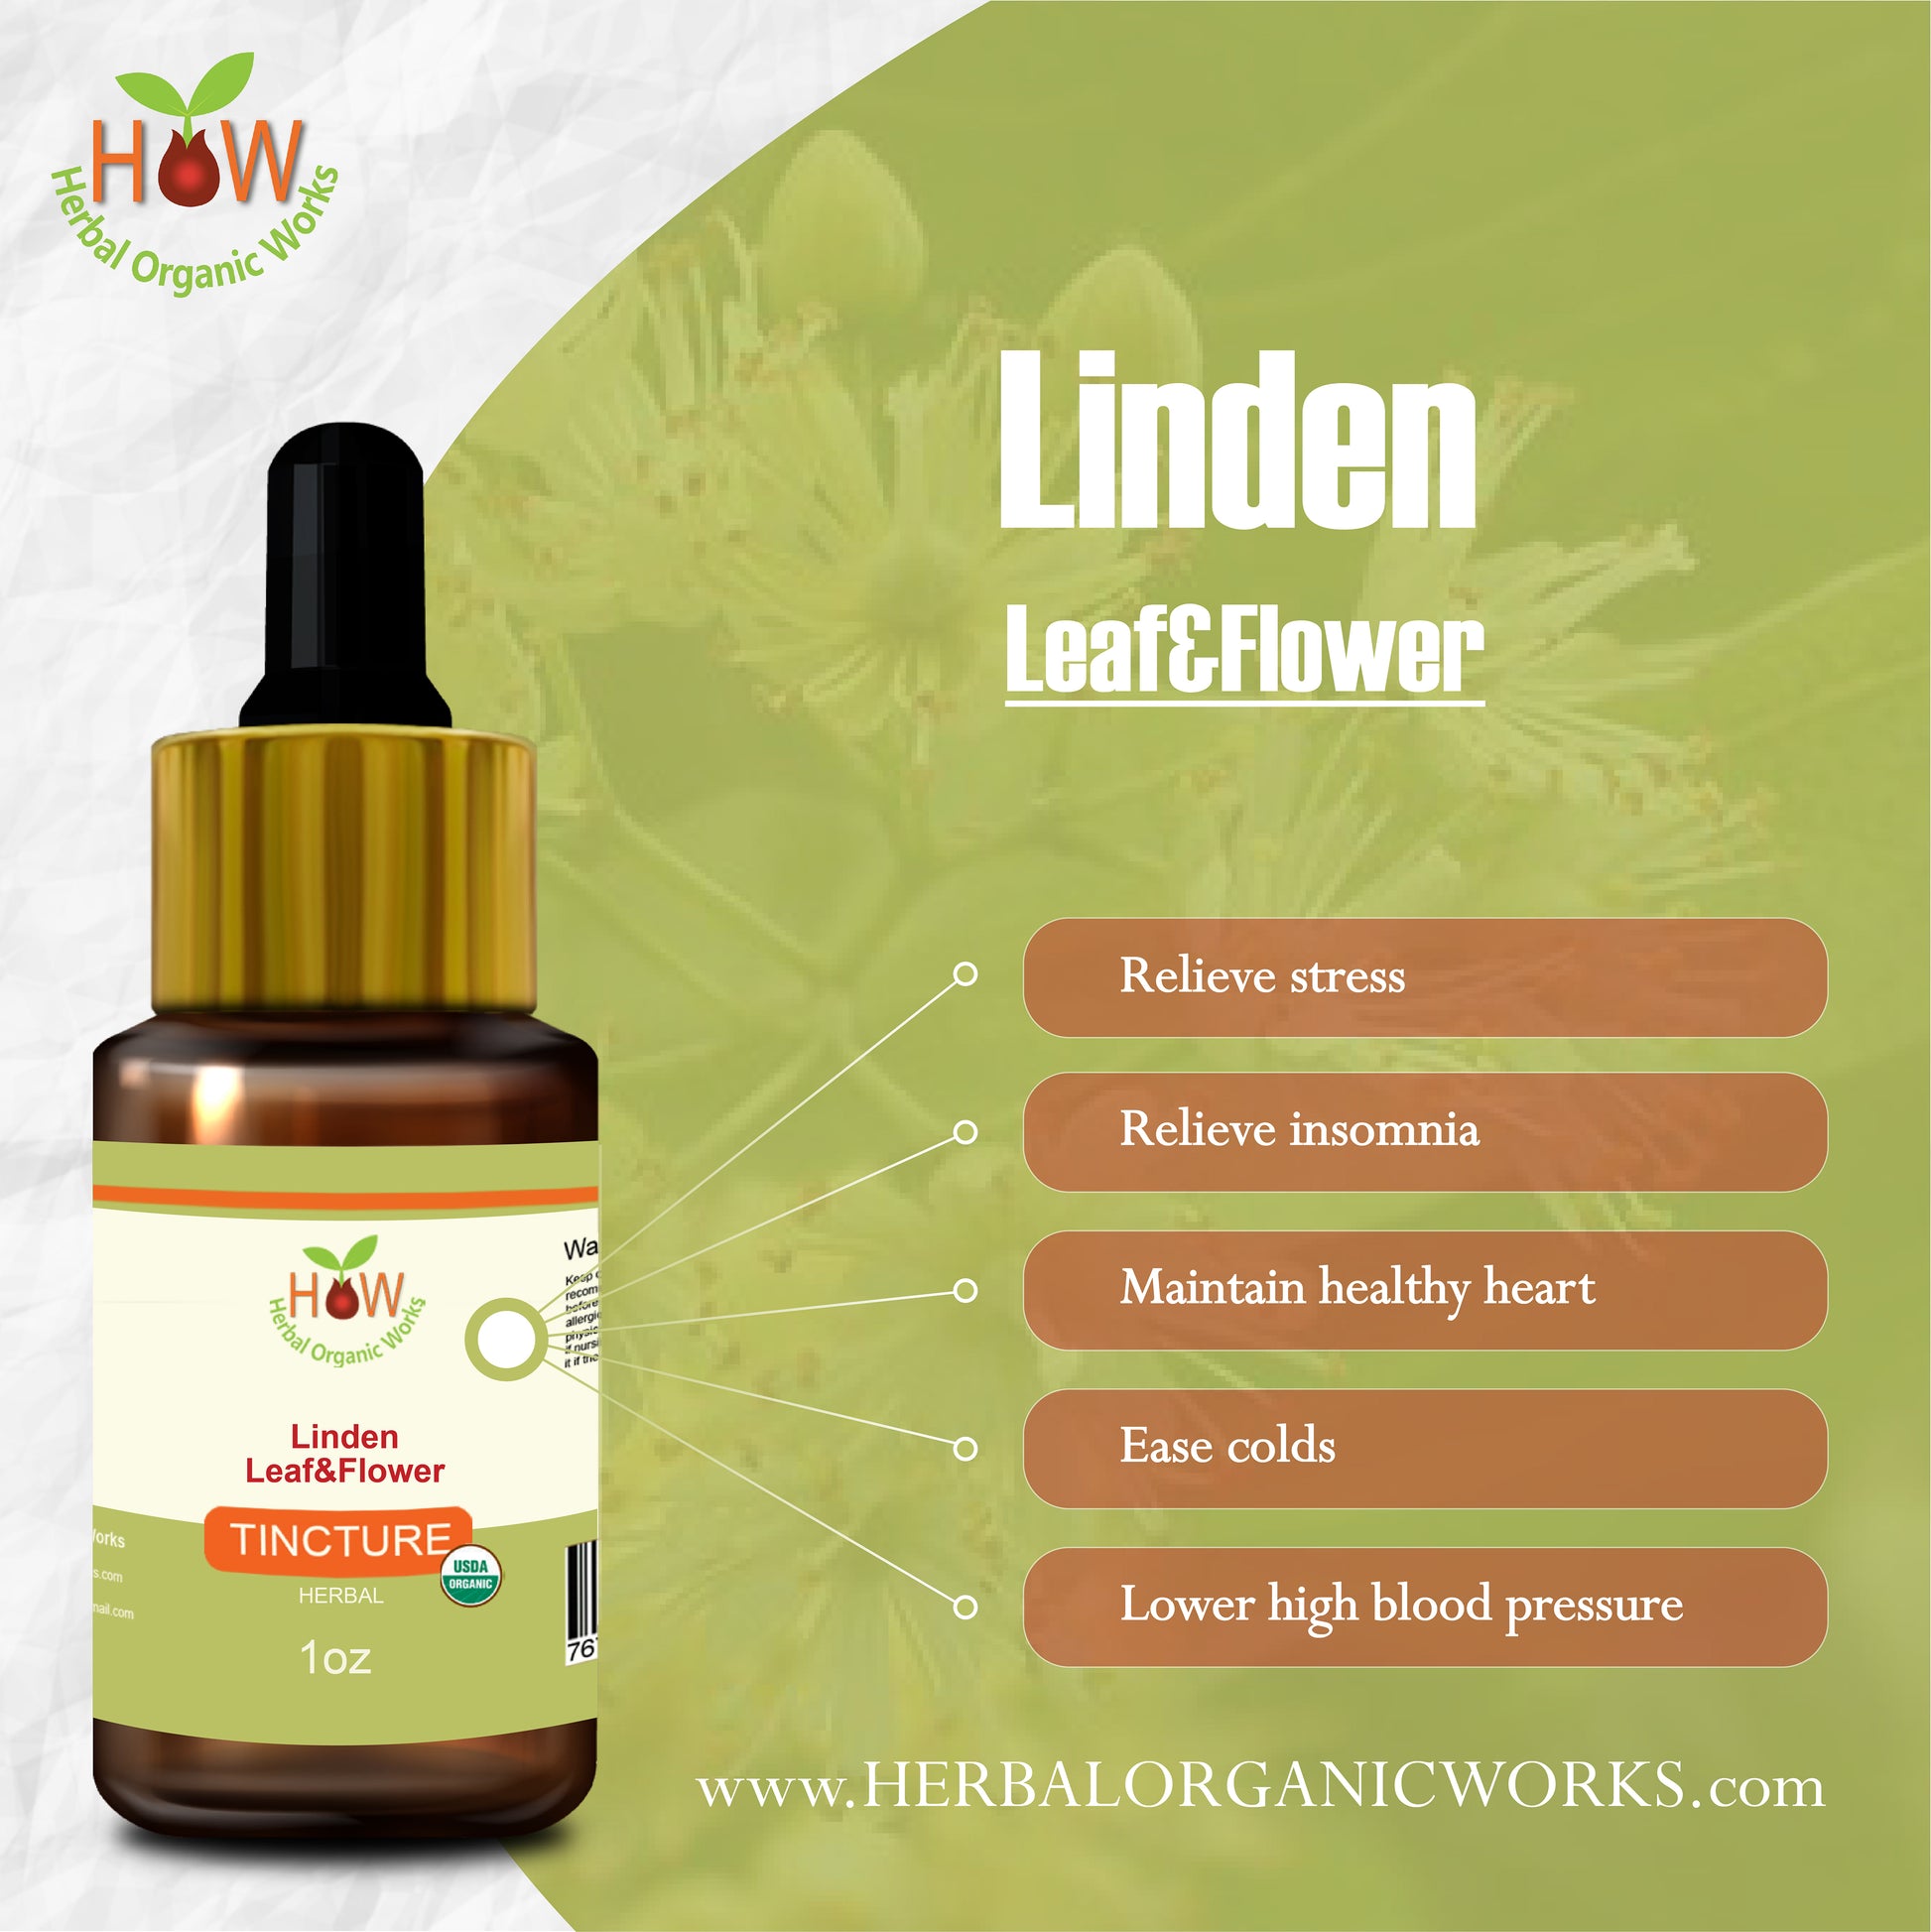 Linden Leaf & Flower